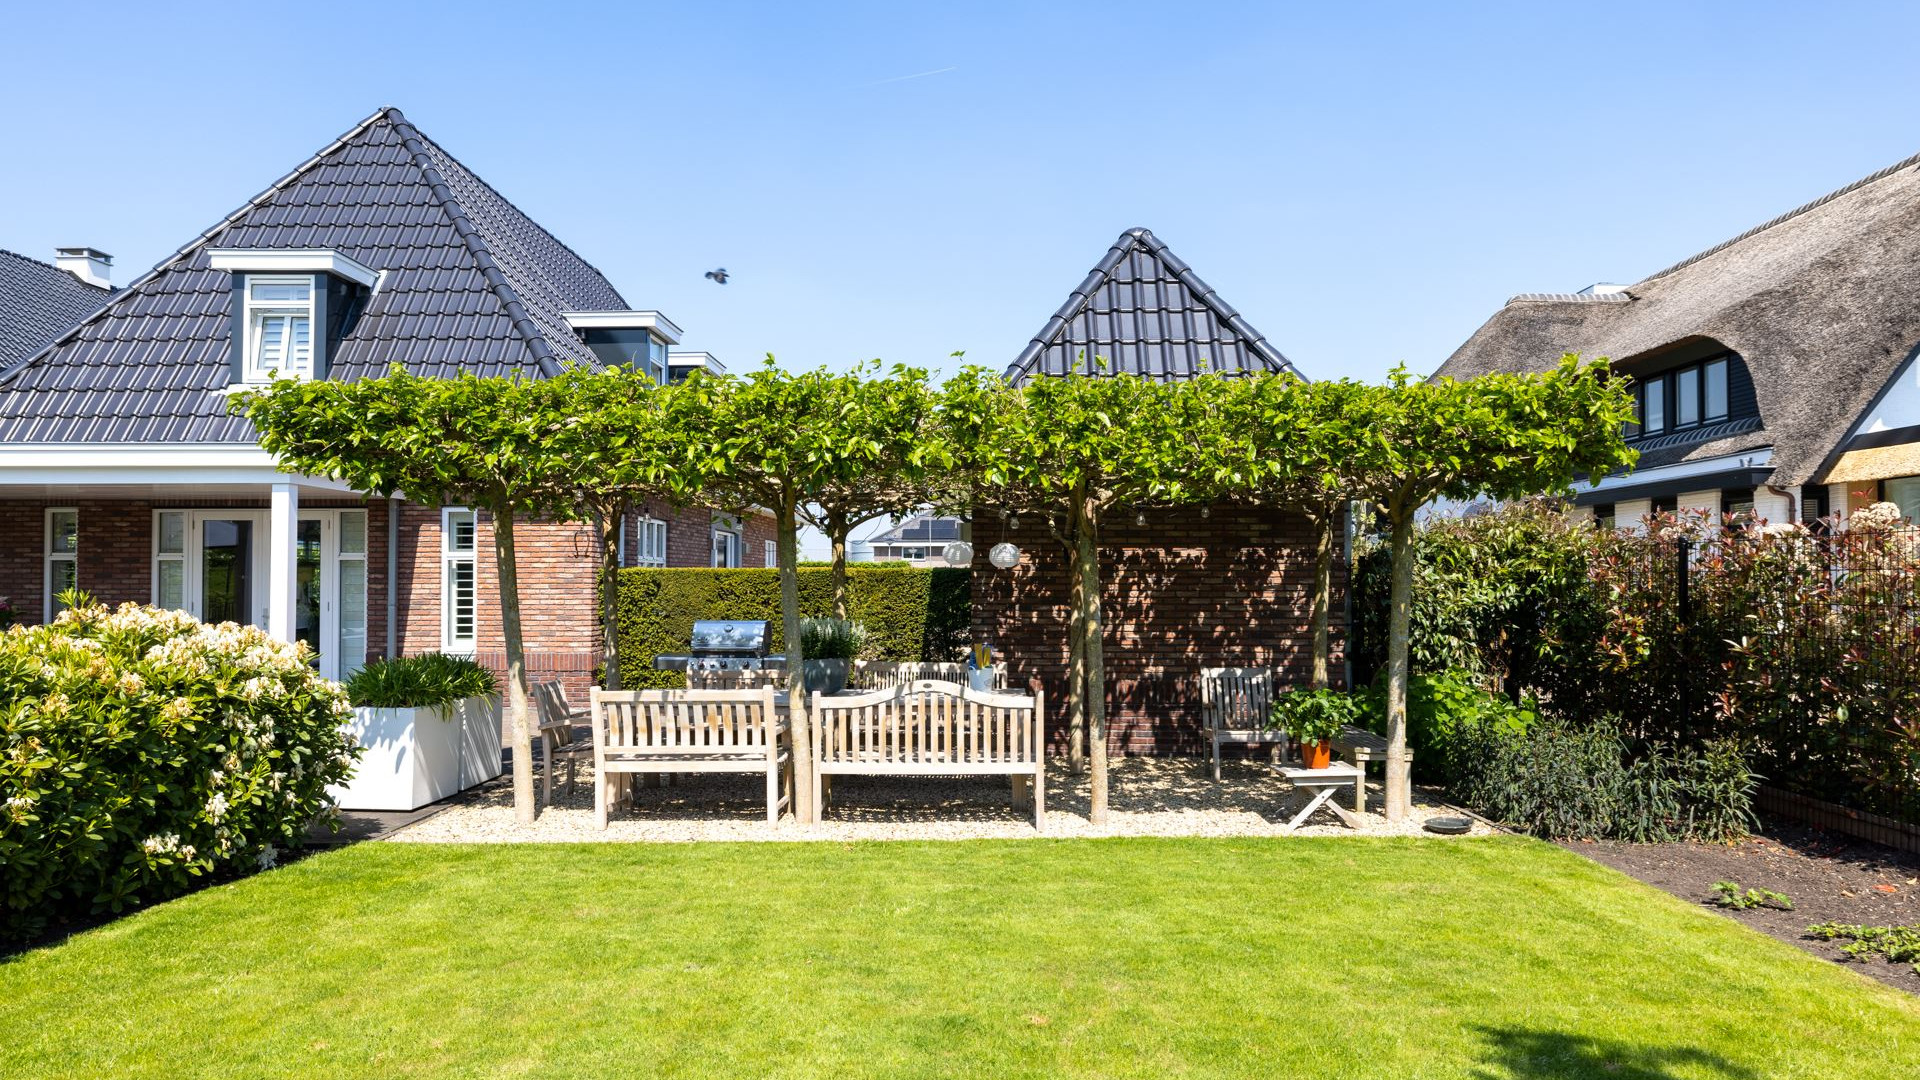 Keeper van Feijenoord koopt miljoenen villa in Berkel en Rodenrijs. Zie foto's 23